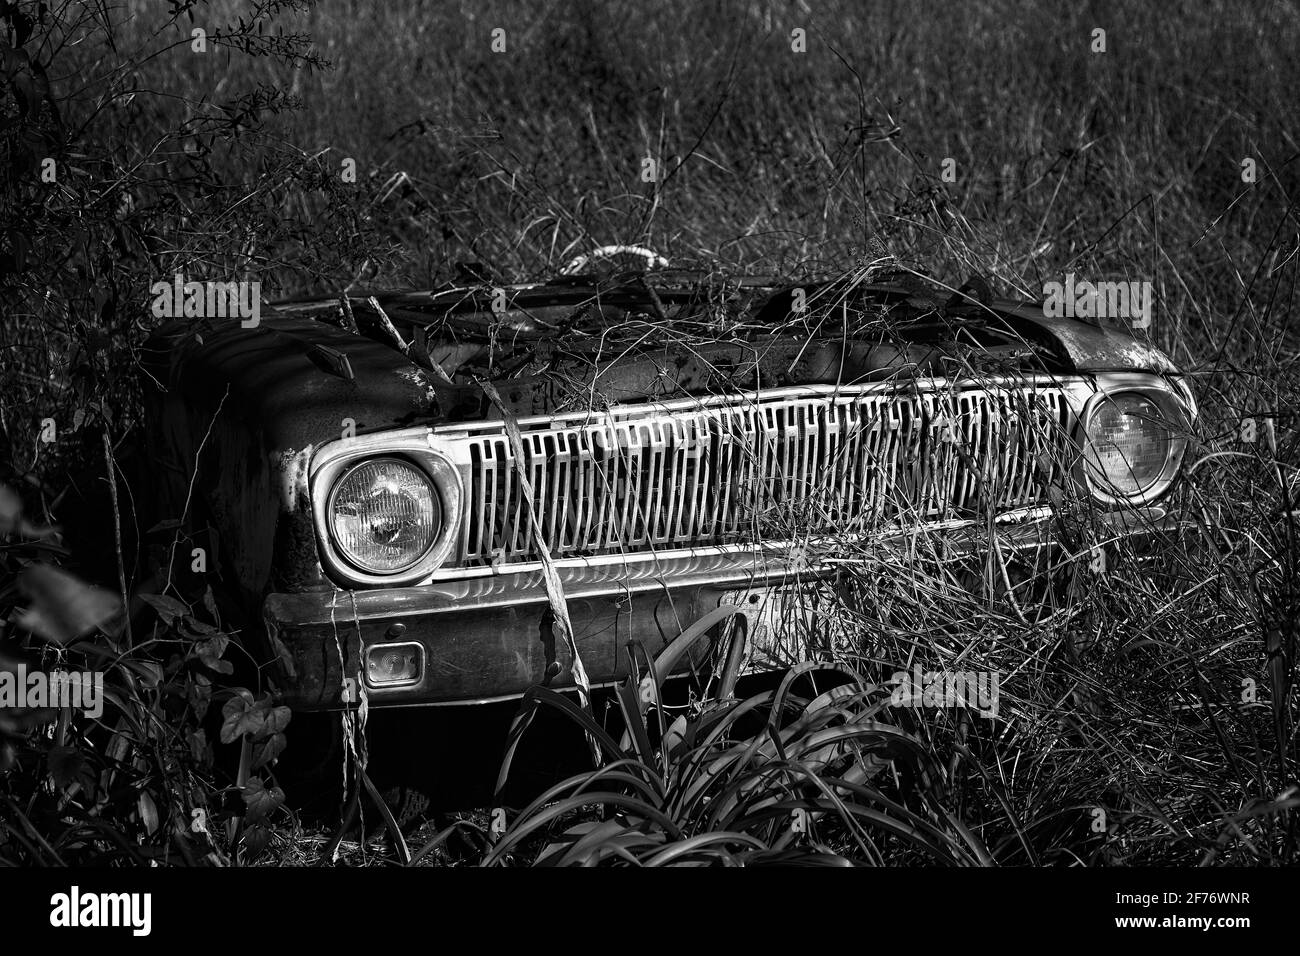 Photographie en noir et blanc d'un grill de voiture ancien assis dans un champ et étant surcultivé par la végétation Banque D'Images